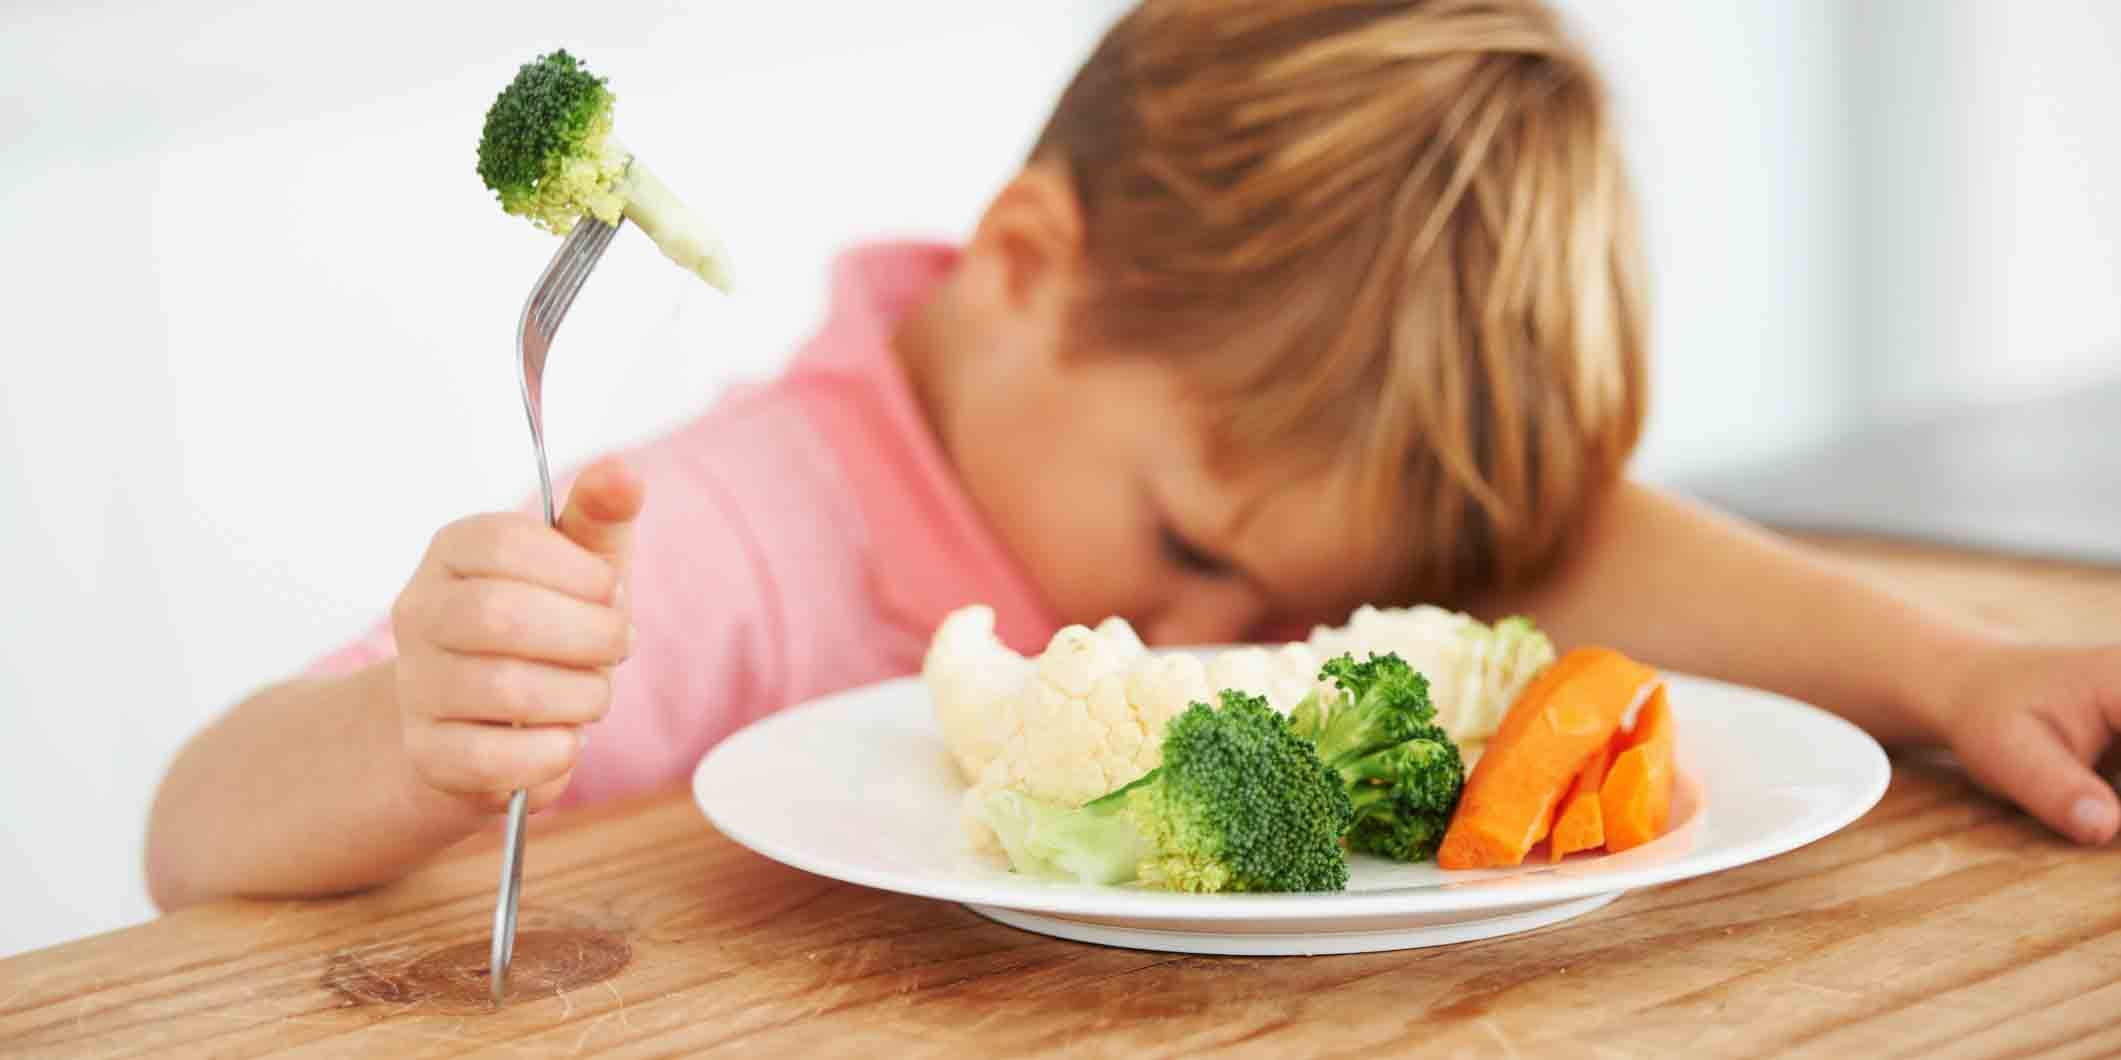 Portugees Neuropathie Wierook Met deze slimme truc laat je je kinderen gemakkelijker groenten eten